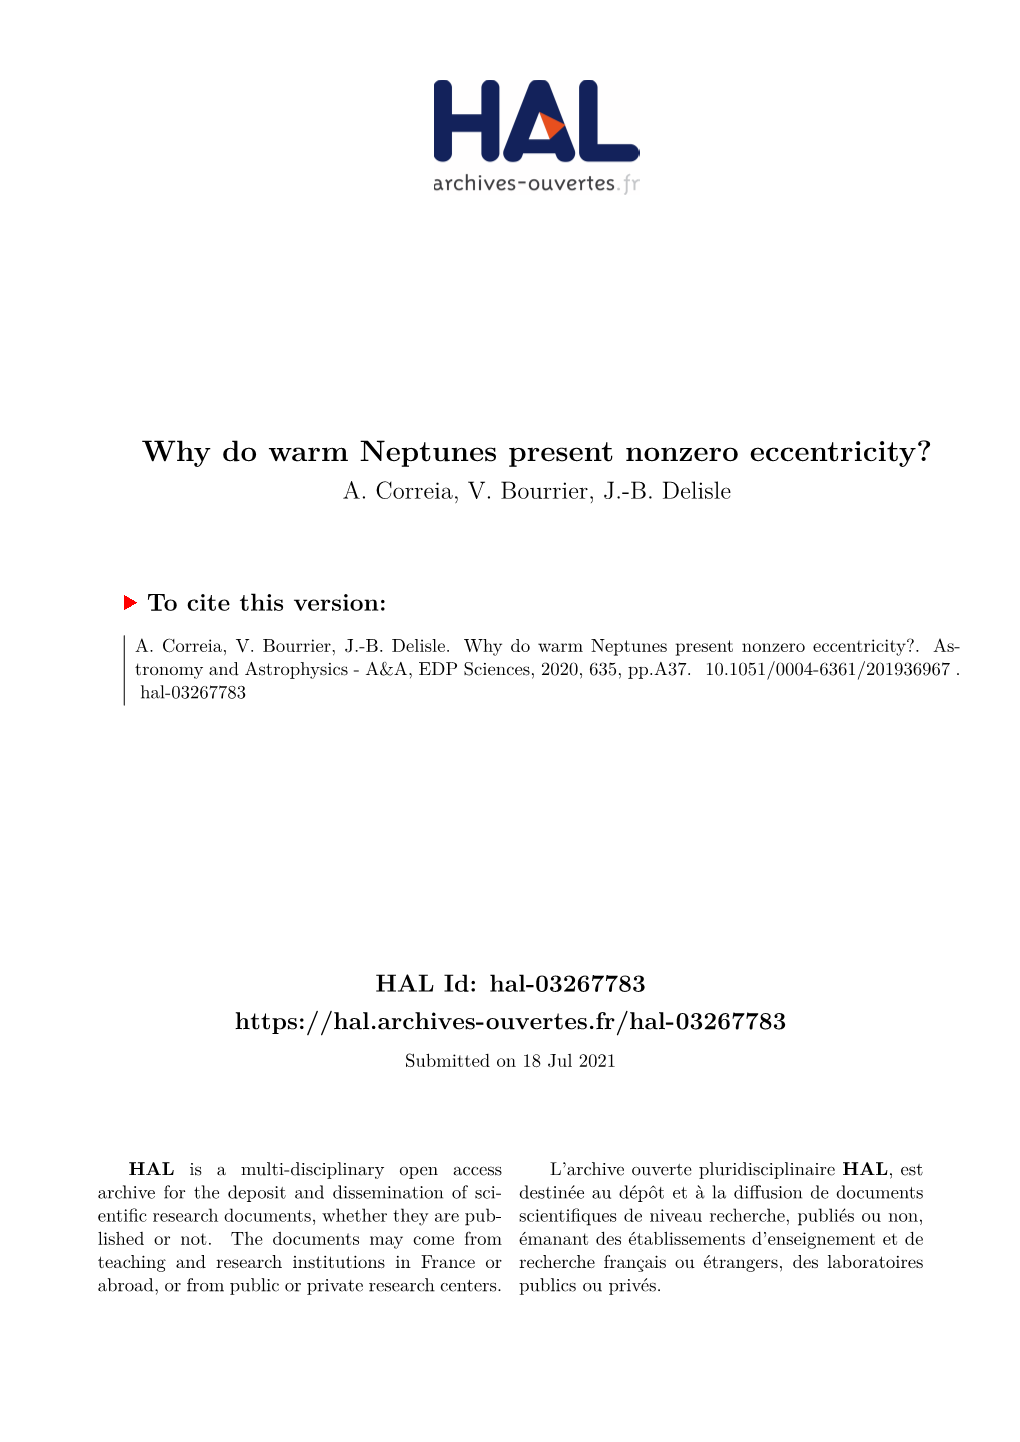 Why Do Warm Neptunes Present Nonzero Eccentricity? A